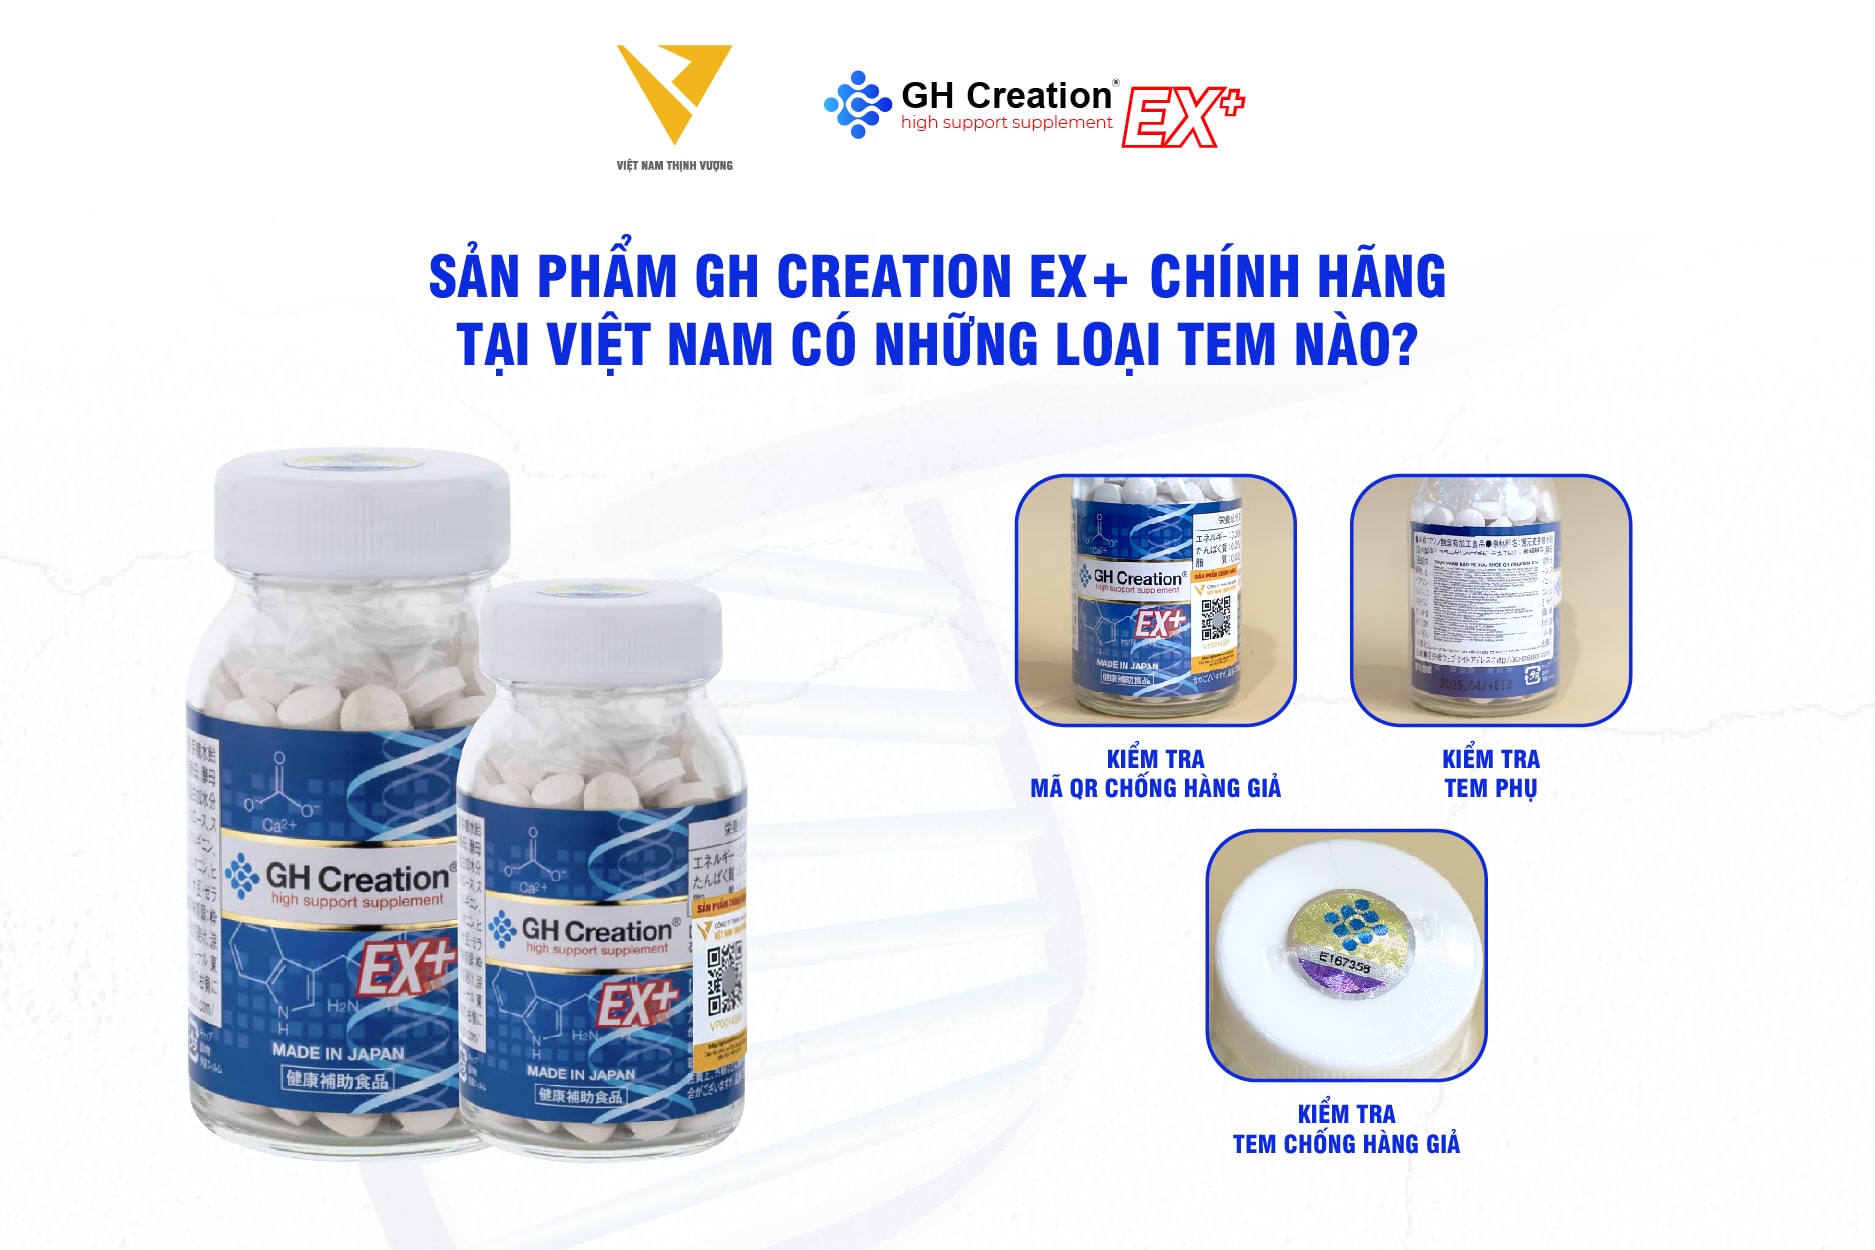 Sản phẩm GH Creation EX+ chính hãng tại Việt Nam có những loại tem nào?